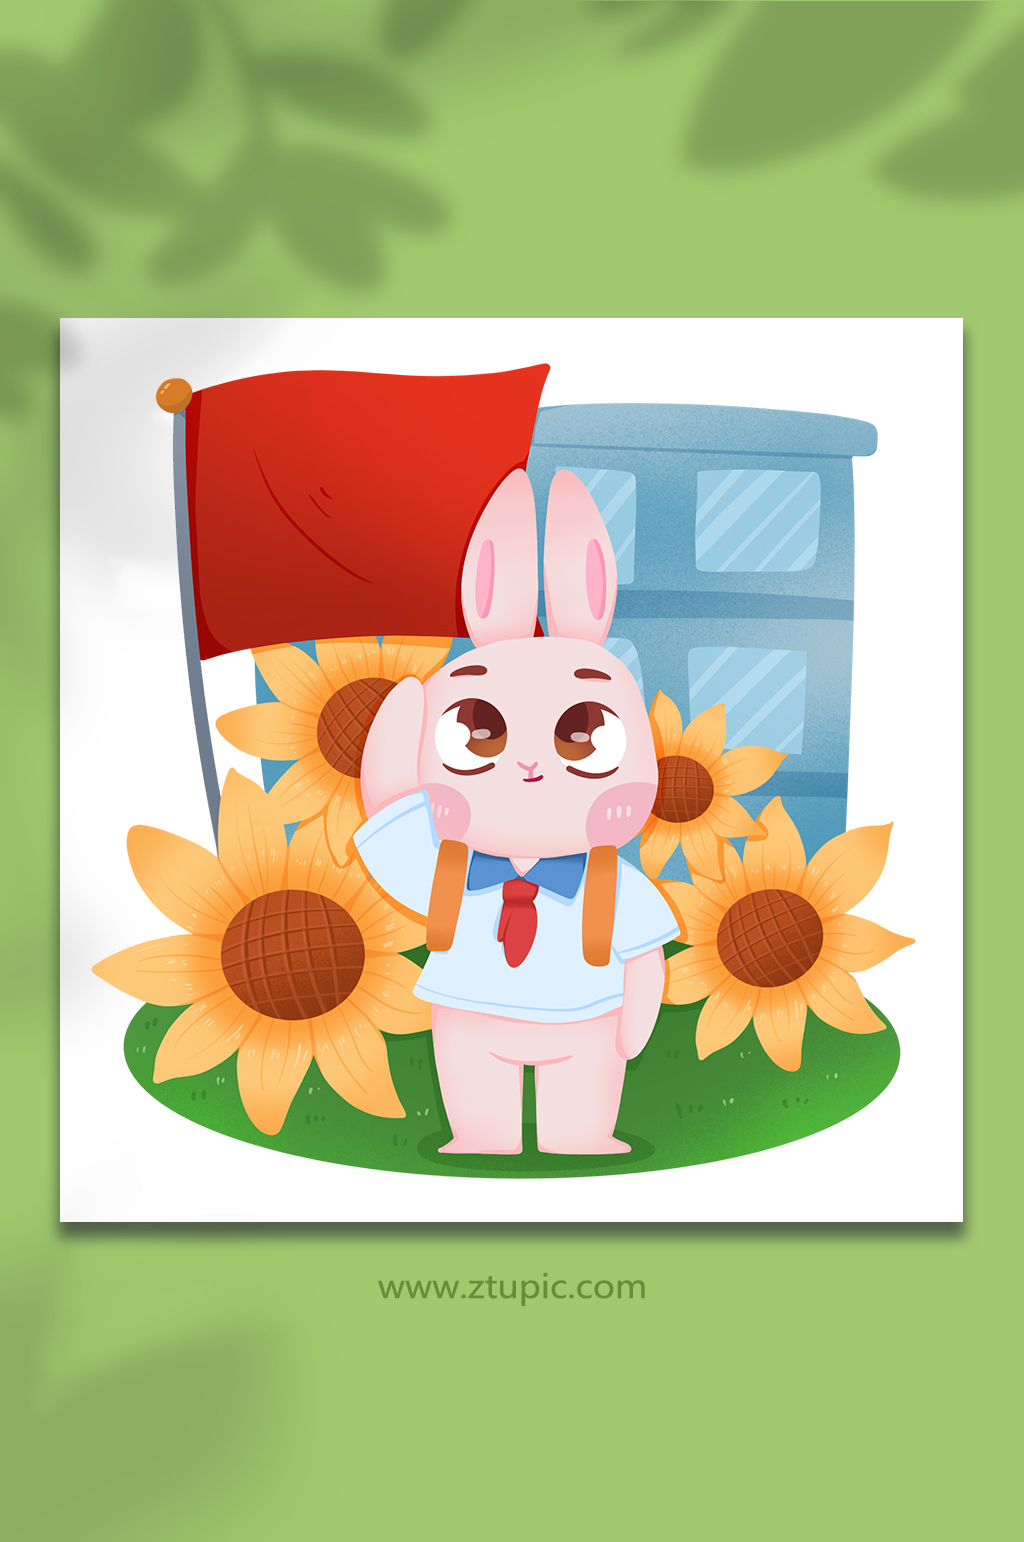 一只兔子和国旗图片